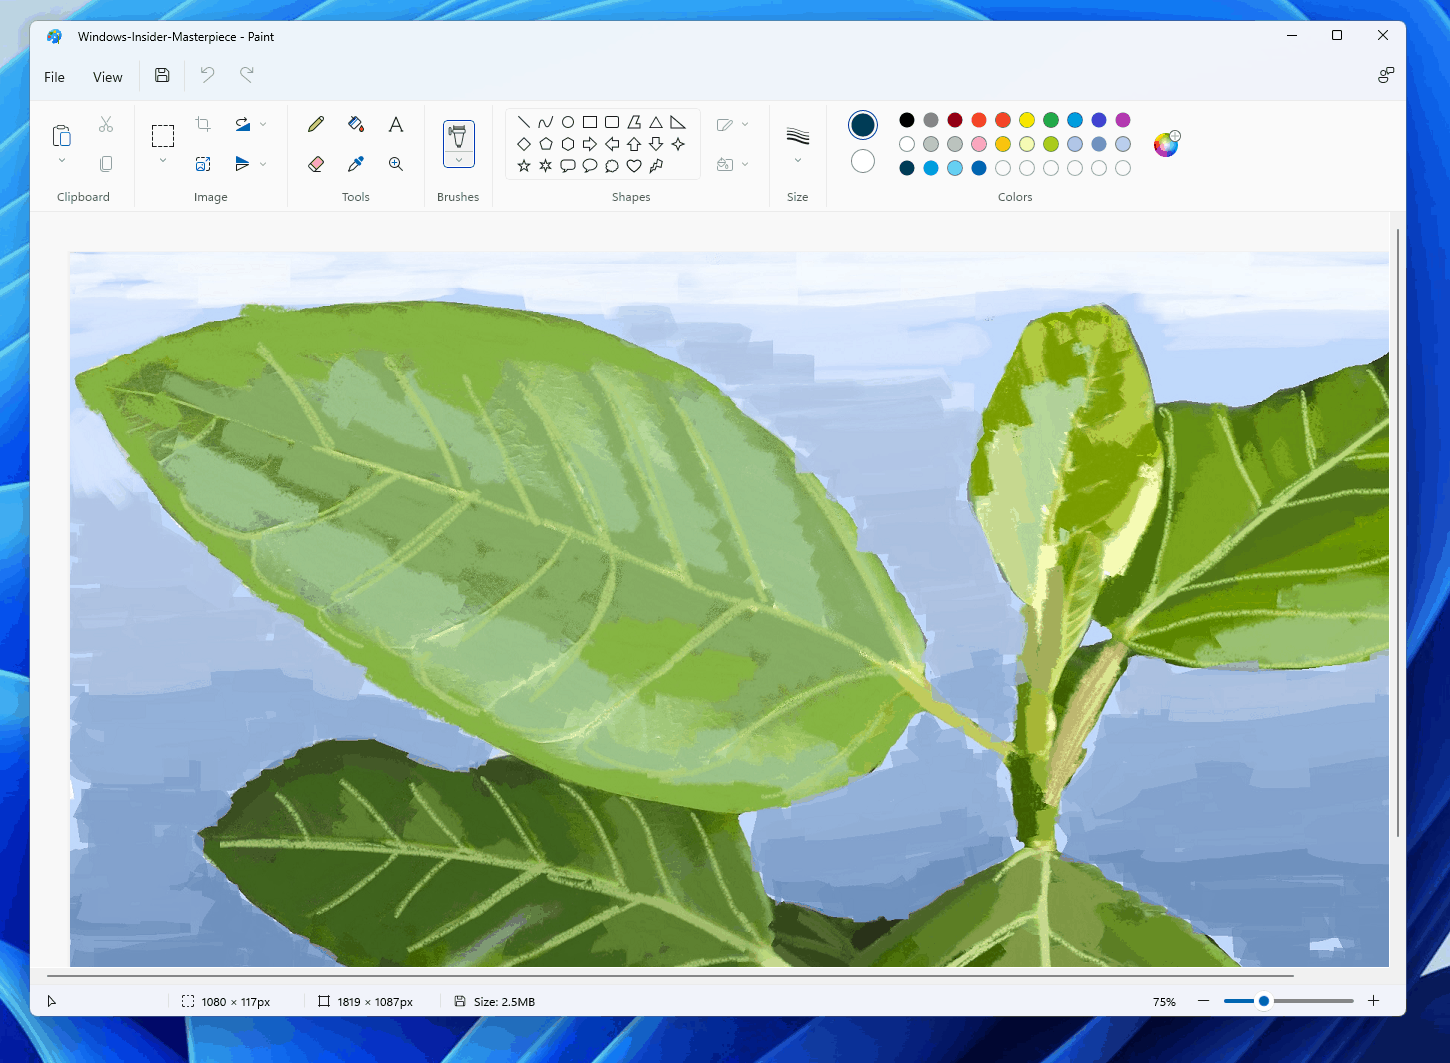 Ứng dụng vẽ trên Windows 11: Khám phá thế giới vẽ tranh trên Windows 11 với các tác phẩm nghệ thuật đầy đặn và chân thực. Sử dụng các công cụ và tính năng sáng tạo, bạn có thể vẽ ra những bức tranh nghệ thuật phong phú và đầy tính thẩm mỹ. Hãy xem hình ảnh và cảm nhận sự tiện lợi và độc đáo của ứng dụng vẽ trên Windows 11!